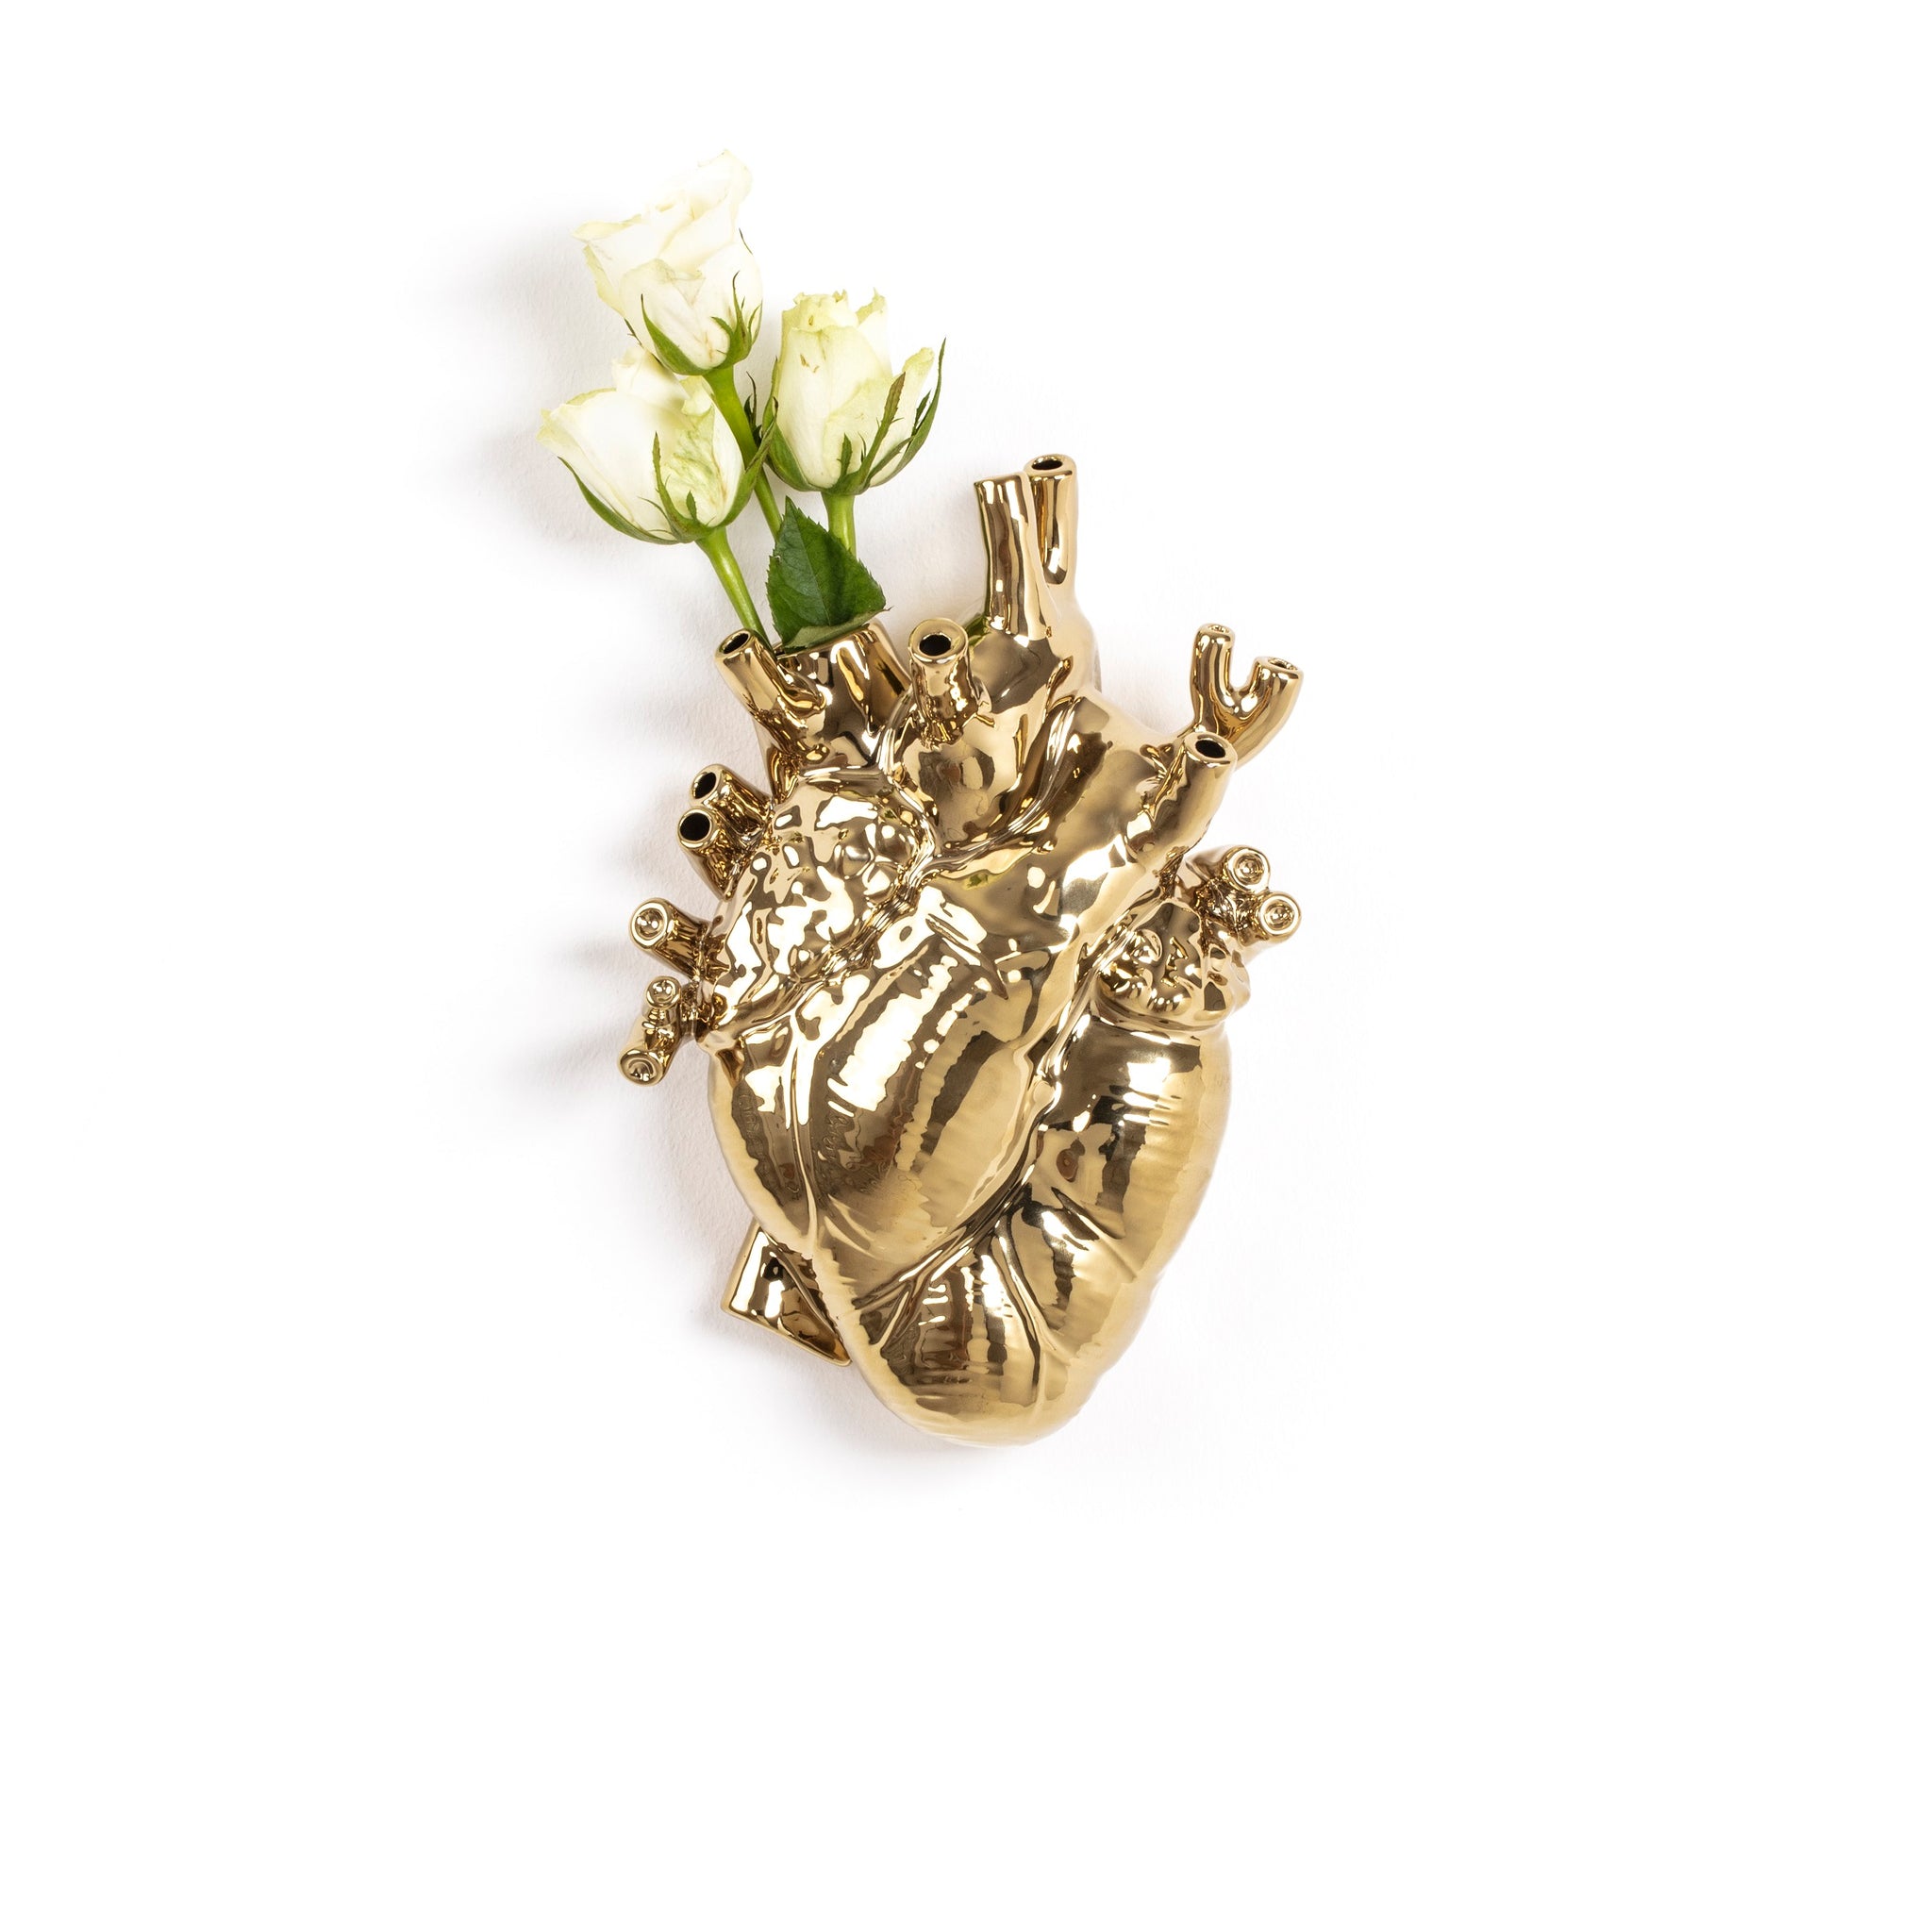 Love in Bloom Gold  is een prachtige porceleinen vaas, ontworpen door Marcantonio voor het Italiaanse merk Seletti. Hij is vormgegeven in de vorm van een anatomisch menselijk hart, en voorzien van een laag goud. Het perfecte kado voor iedereen met een gouden hart.